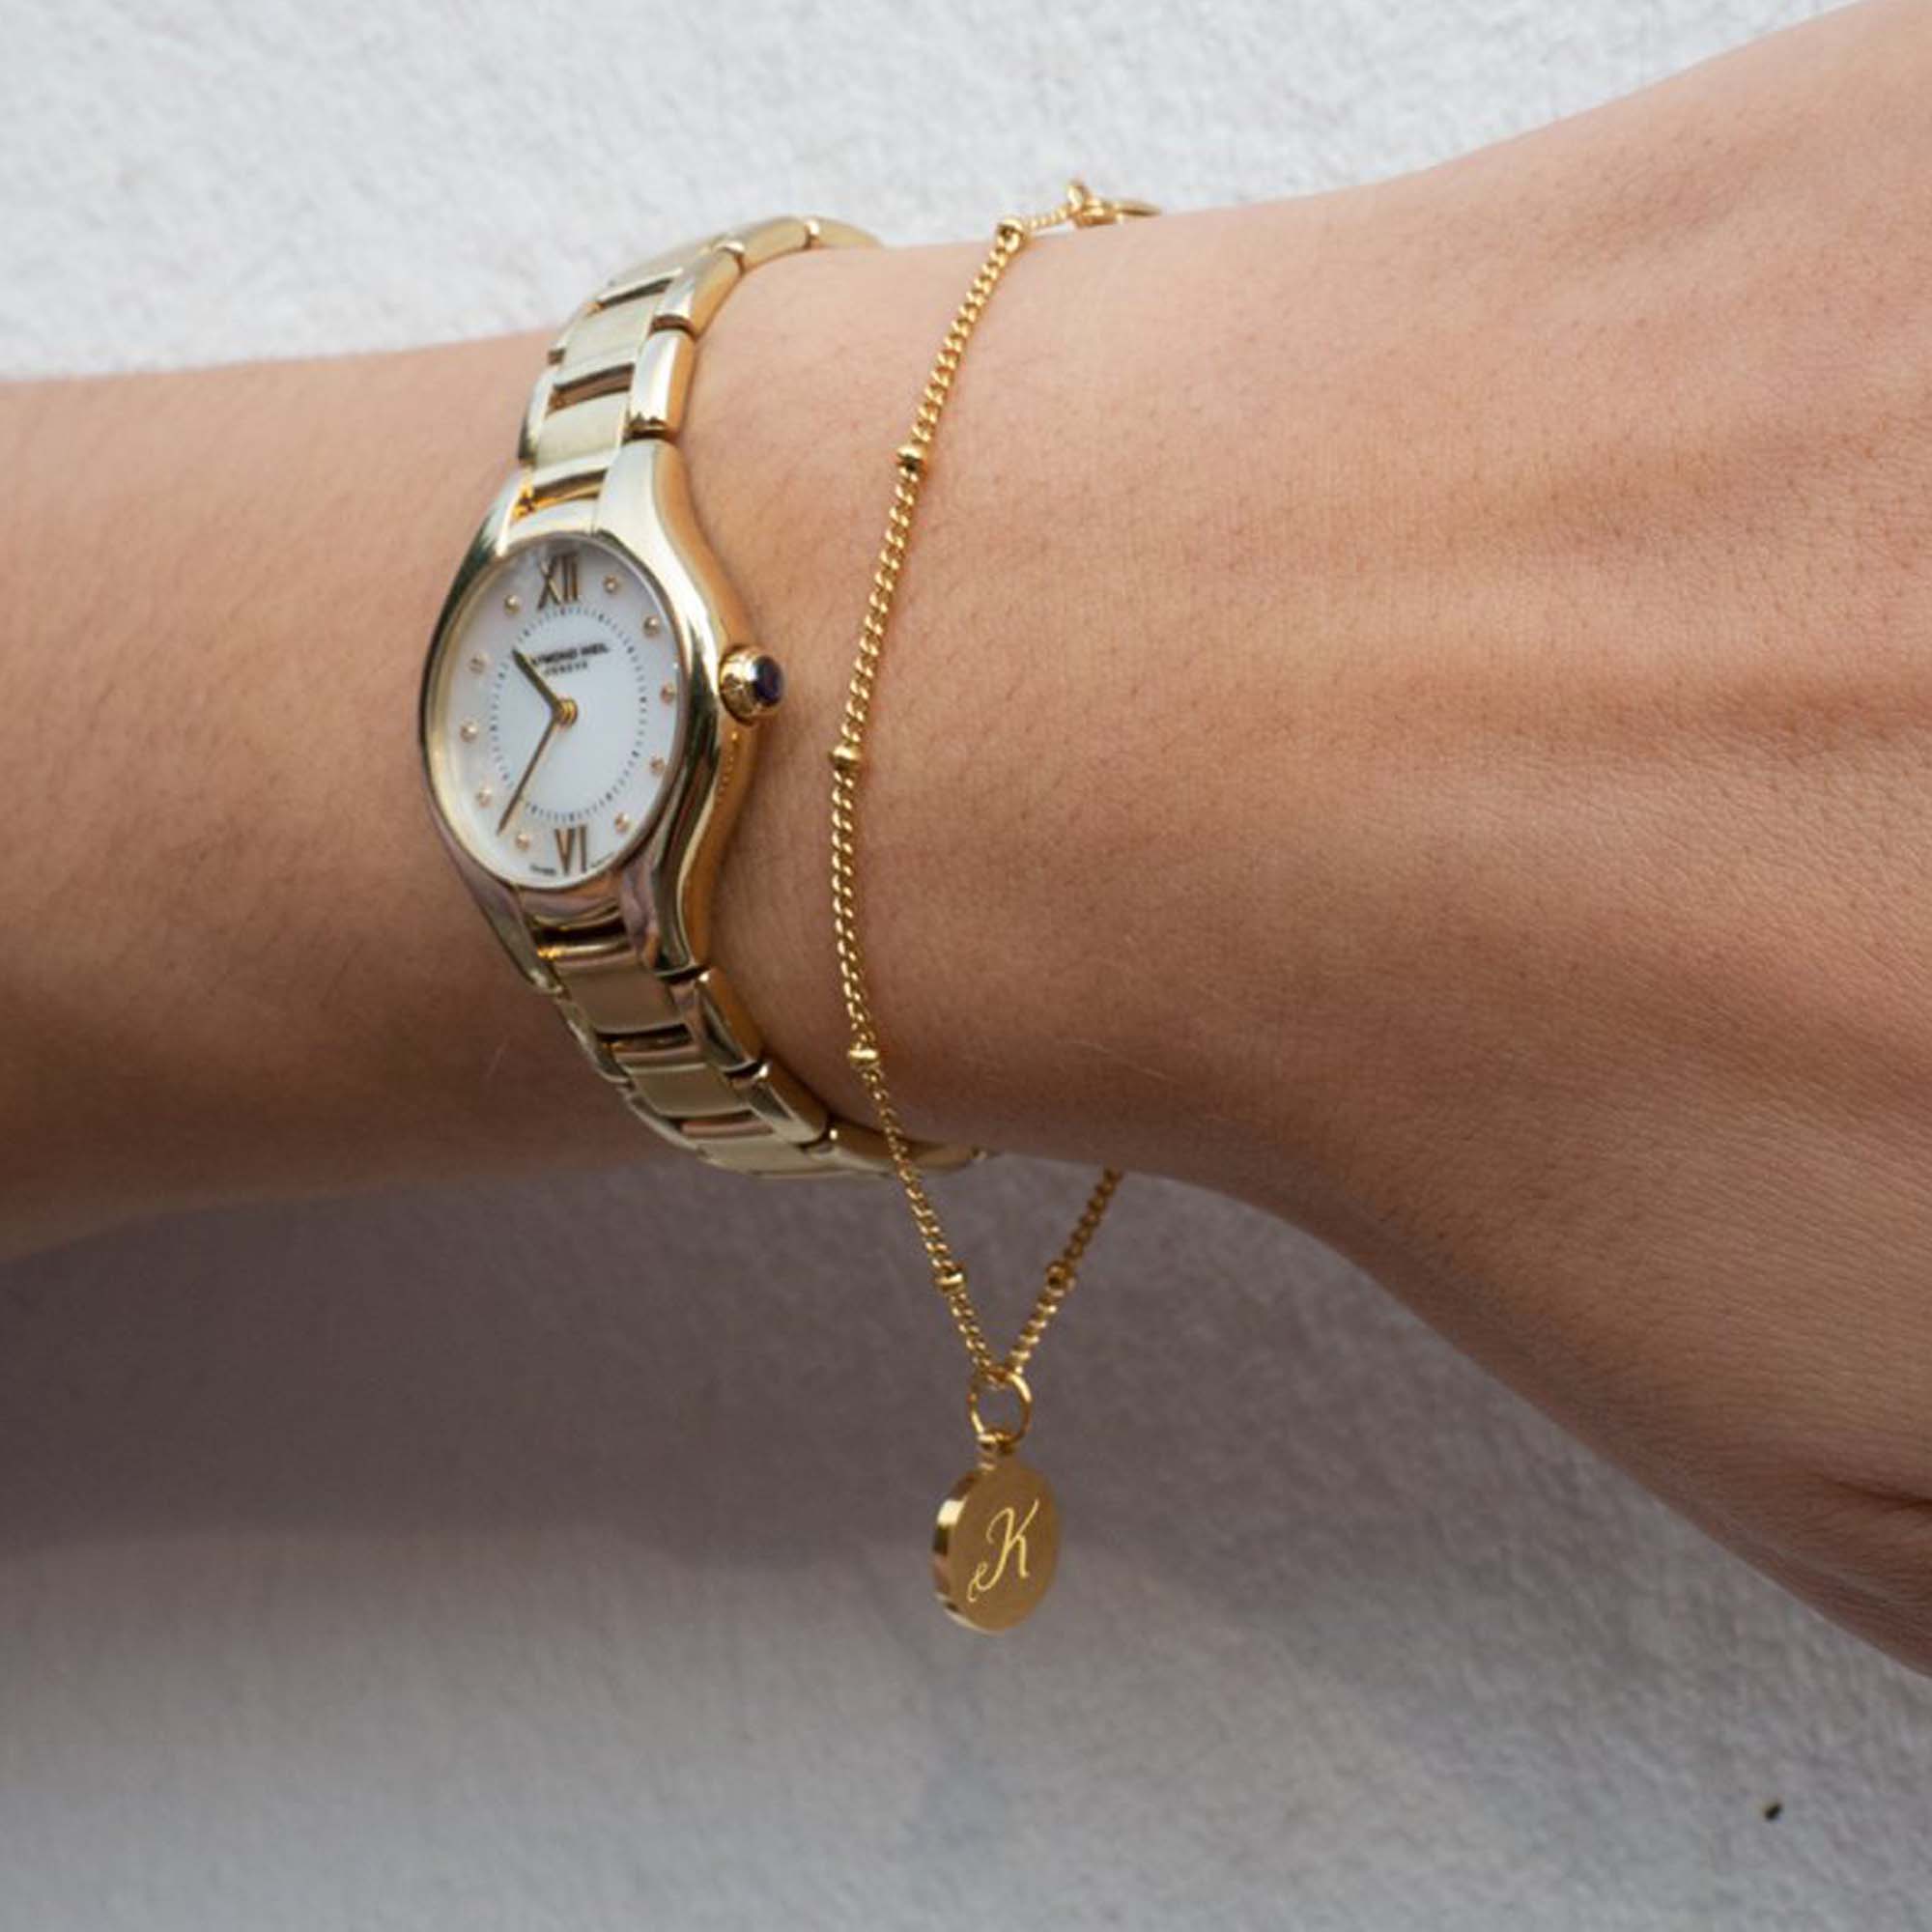 Armband mit einer Intiale in Gold am Handgelenk mit einer goldenen Uhr